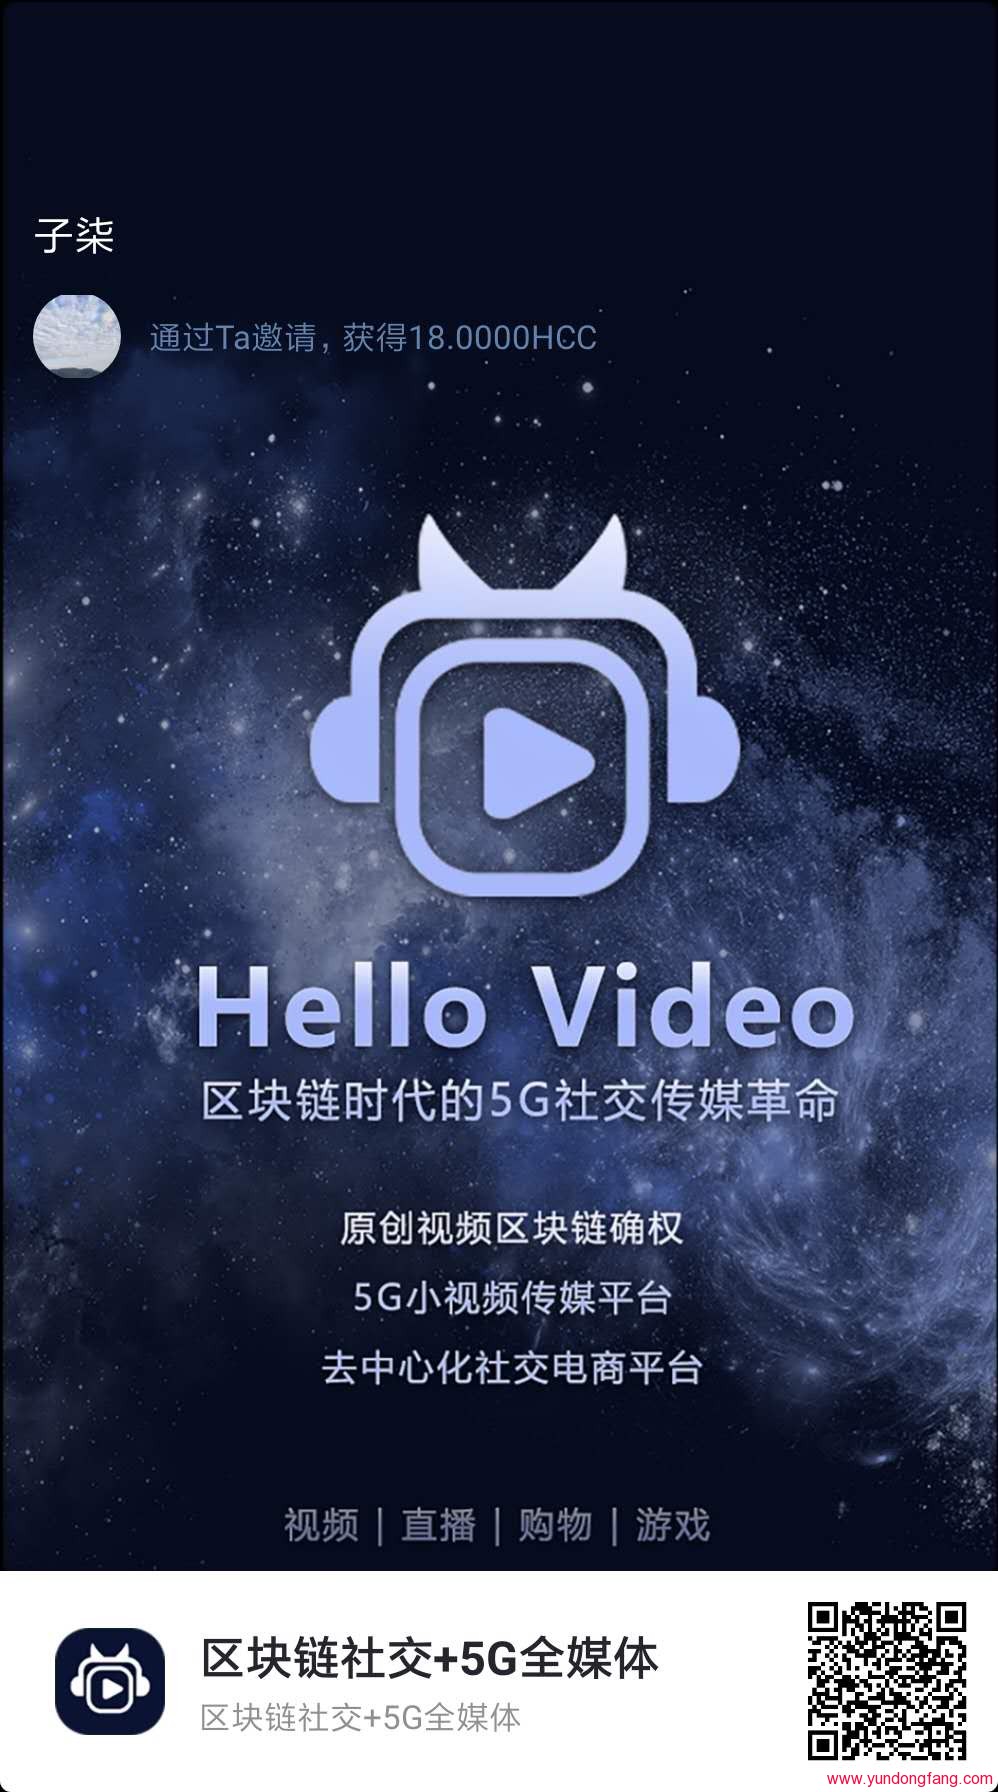 HelloVideo哈啰视频怎么赚钱，邀请码在哪，HCC免费送认证EUSDT